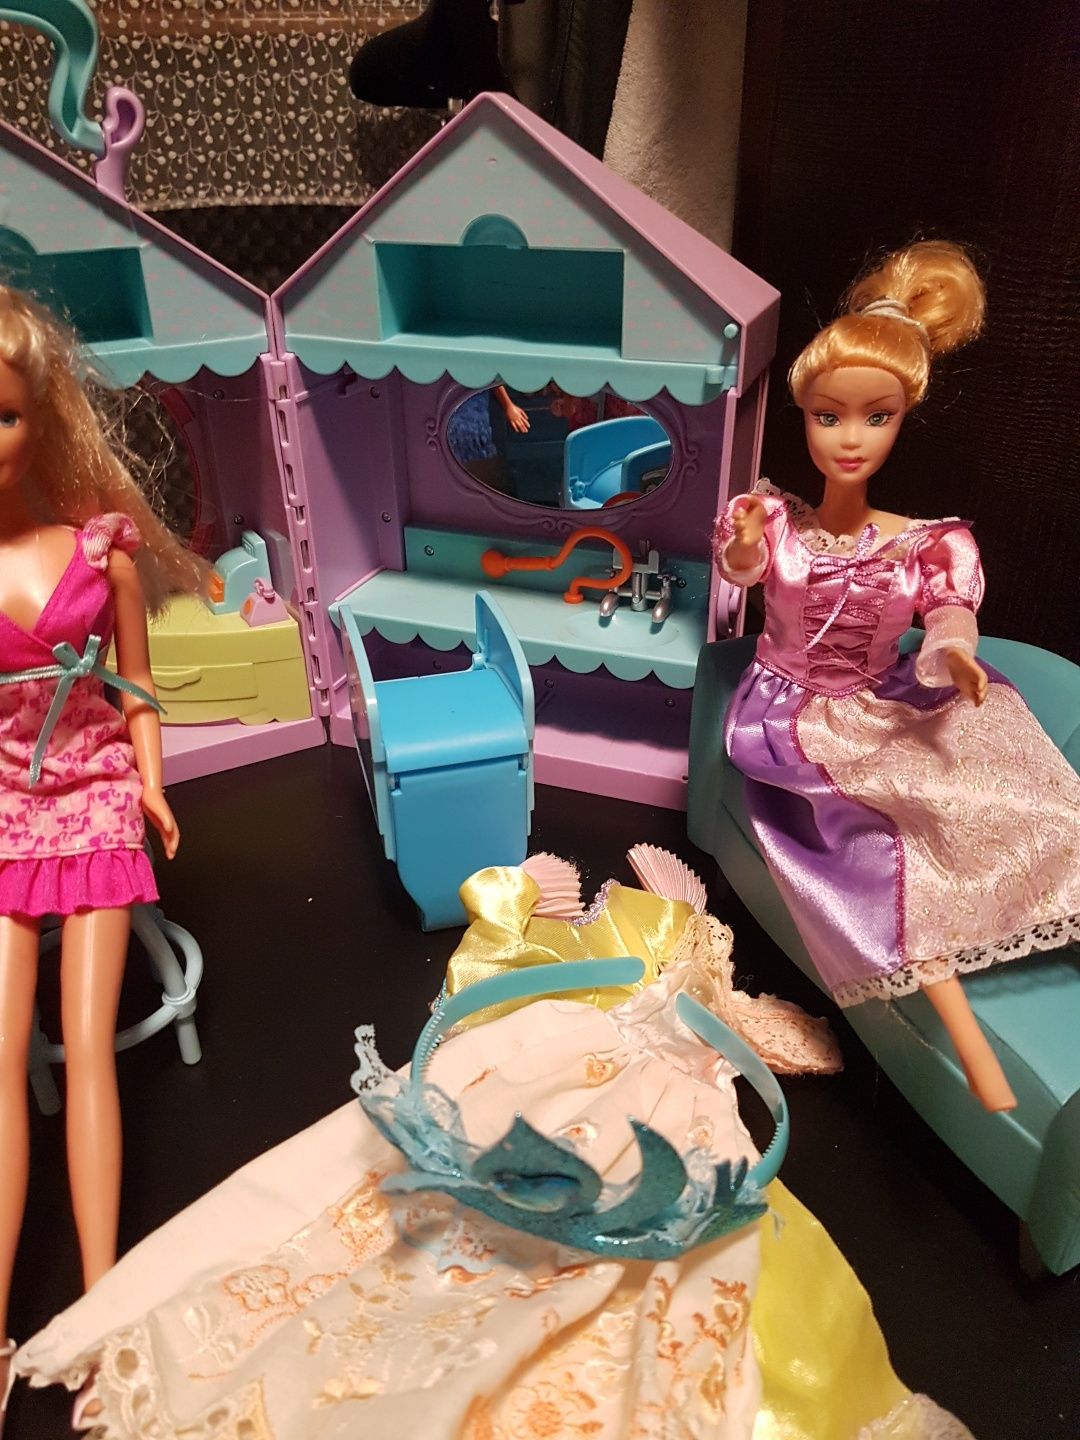 Zakład fryzjerski dla lalek Barbie dźwiękowy interaktywny lalki salon